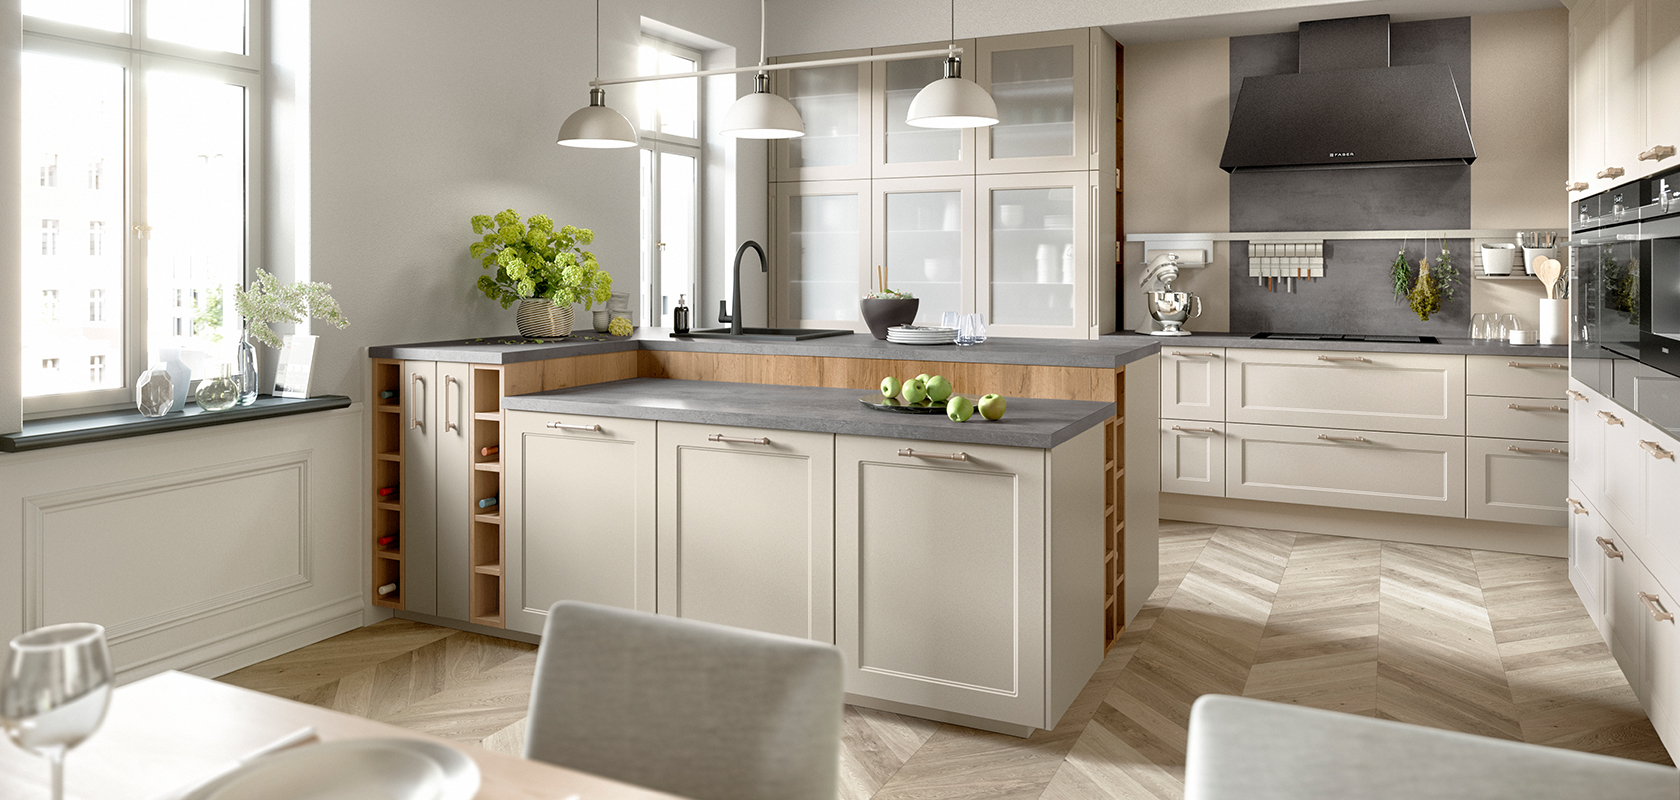 Elegante interior de cocina con luz natural, con un suelo de madera, gabinetes beige, electrodomésticos modernos y un ambiente acogedor e invitante.